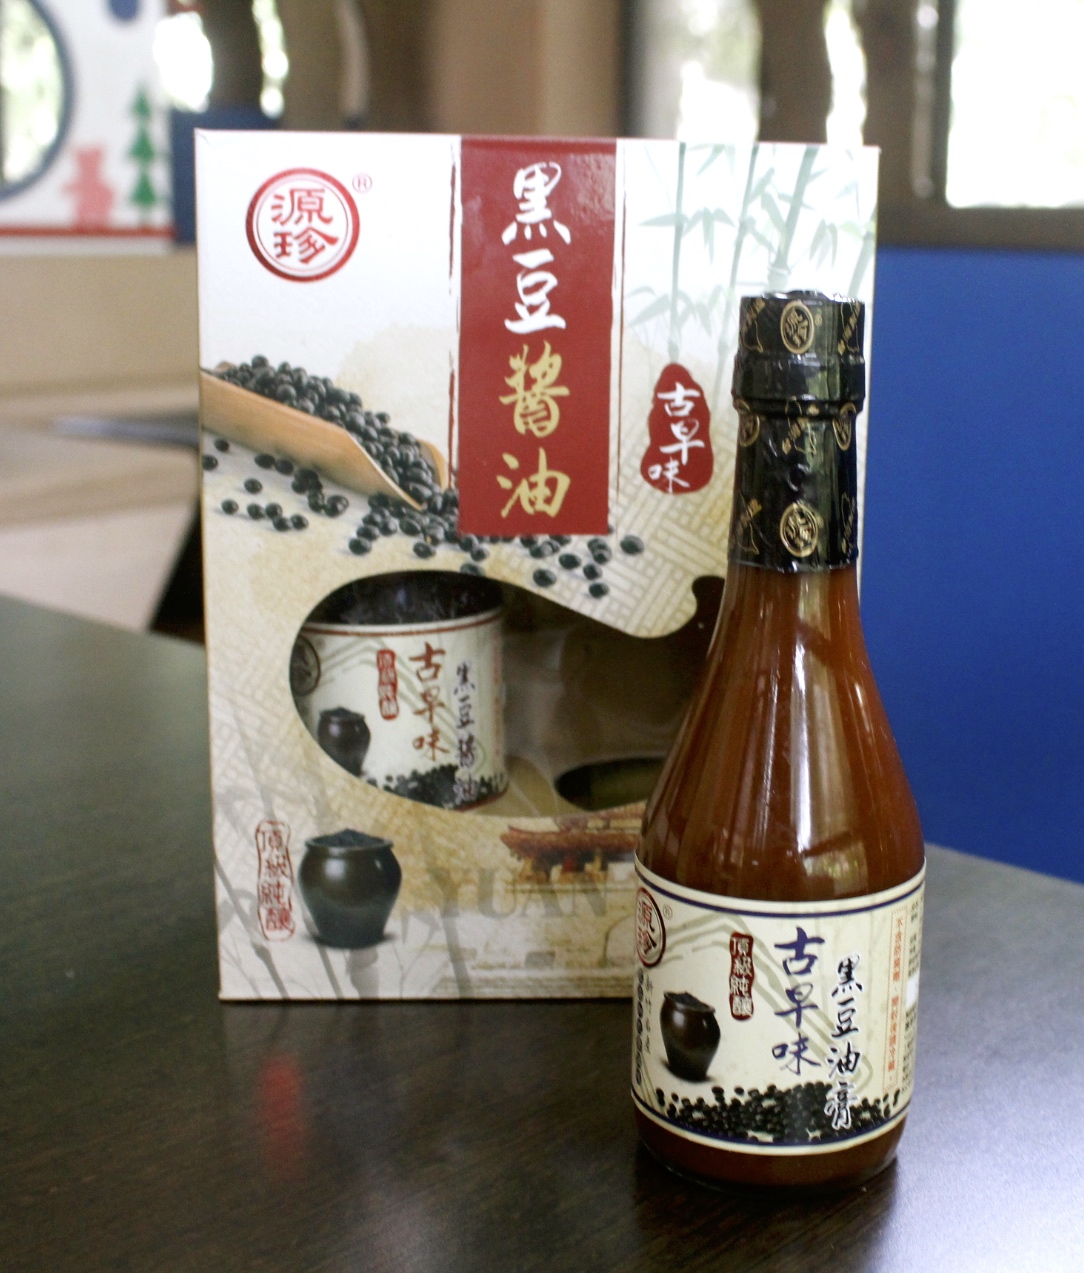 新竹醬油,源珍傳統釀造醬油,烹調用品